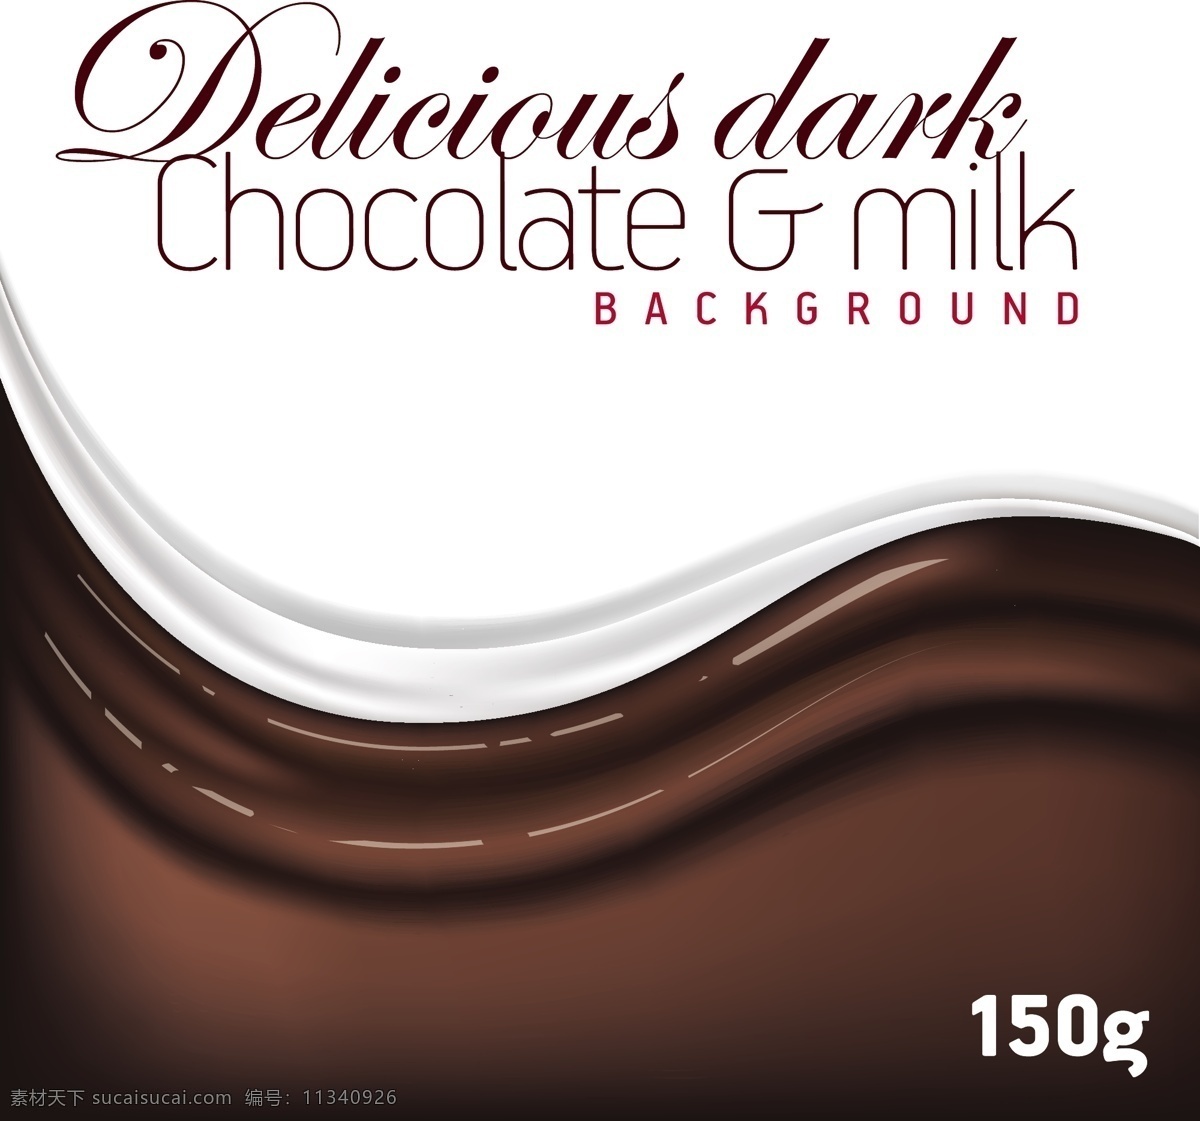 巧克力液态 白色牛奶背景 牛奶液体 牛奶流体 巧克力海报 褐色背景 巧克力牛奶 巧克力英文 流体 巧克力流体 矢量巧克力 手绘巧克力 巧克力插画 巧克力背景 巧克力曲线 不规则几何 几何图形 飘带 丝带 曲线 巧克力液体 巧克力元素 巧克力素材 巧克力水滴 融化巧克力 背景 底纹 边框 花纹